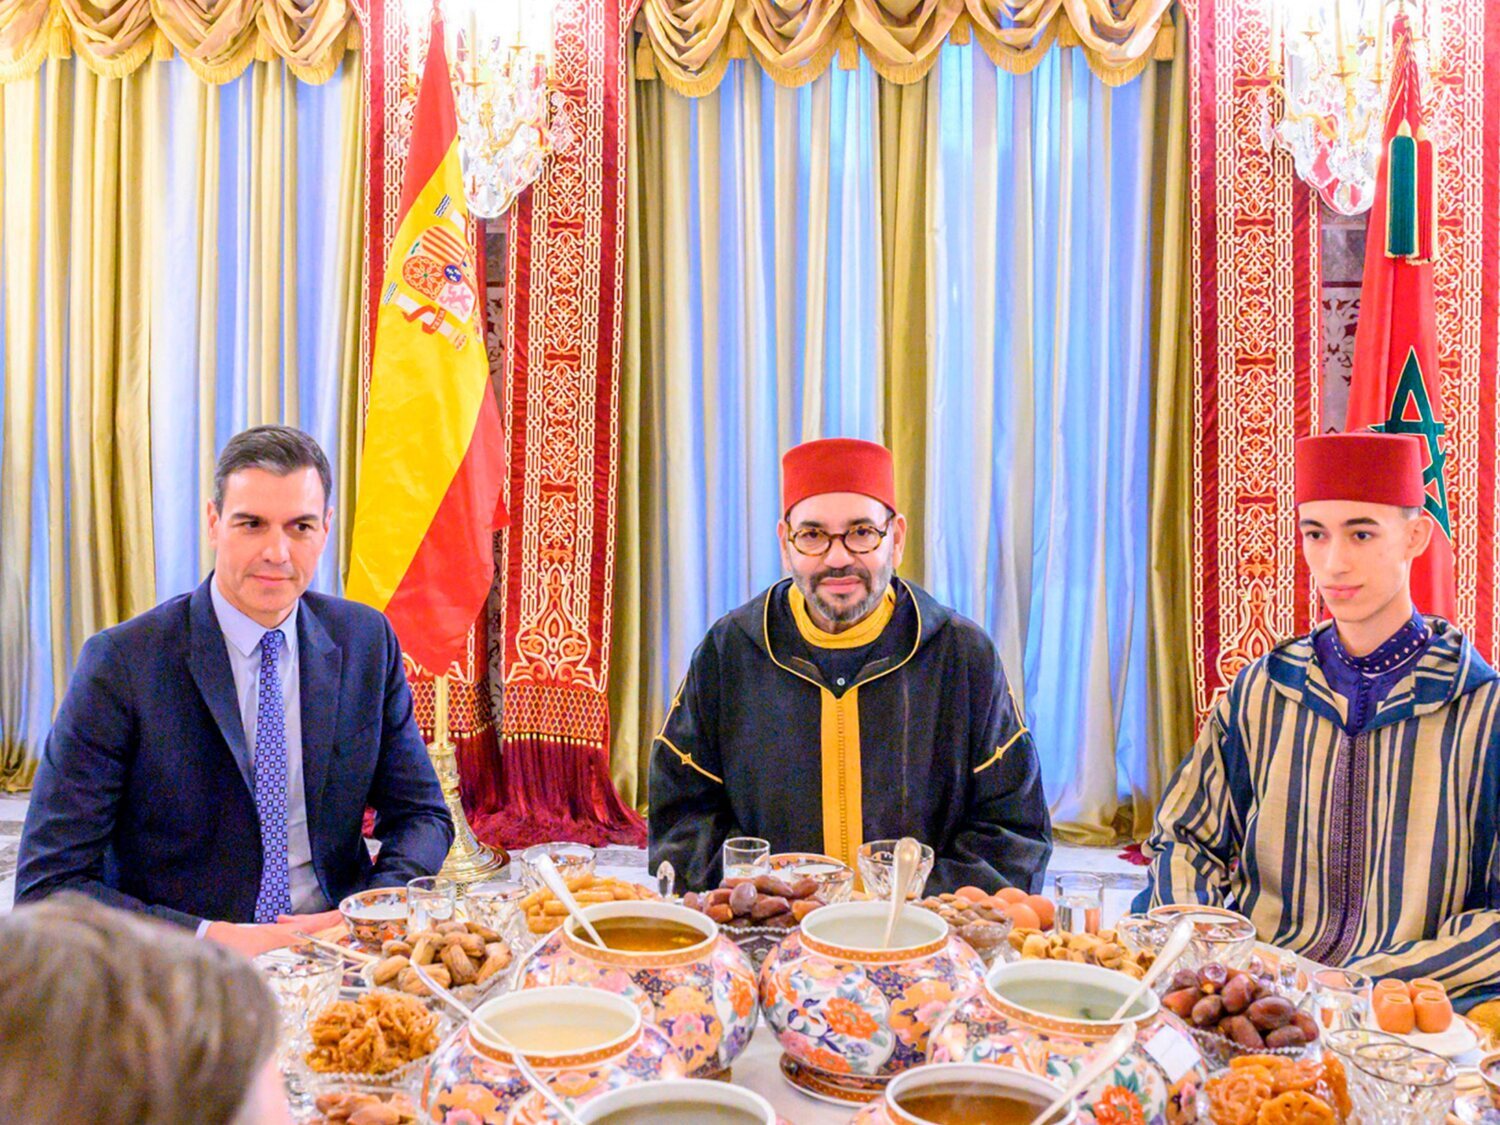 Marruecos podría estar detrás de los famosos espionajes con el programa Pegasus